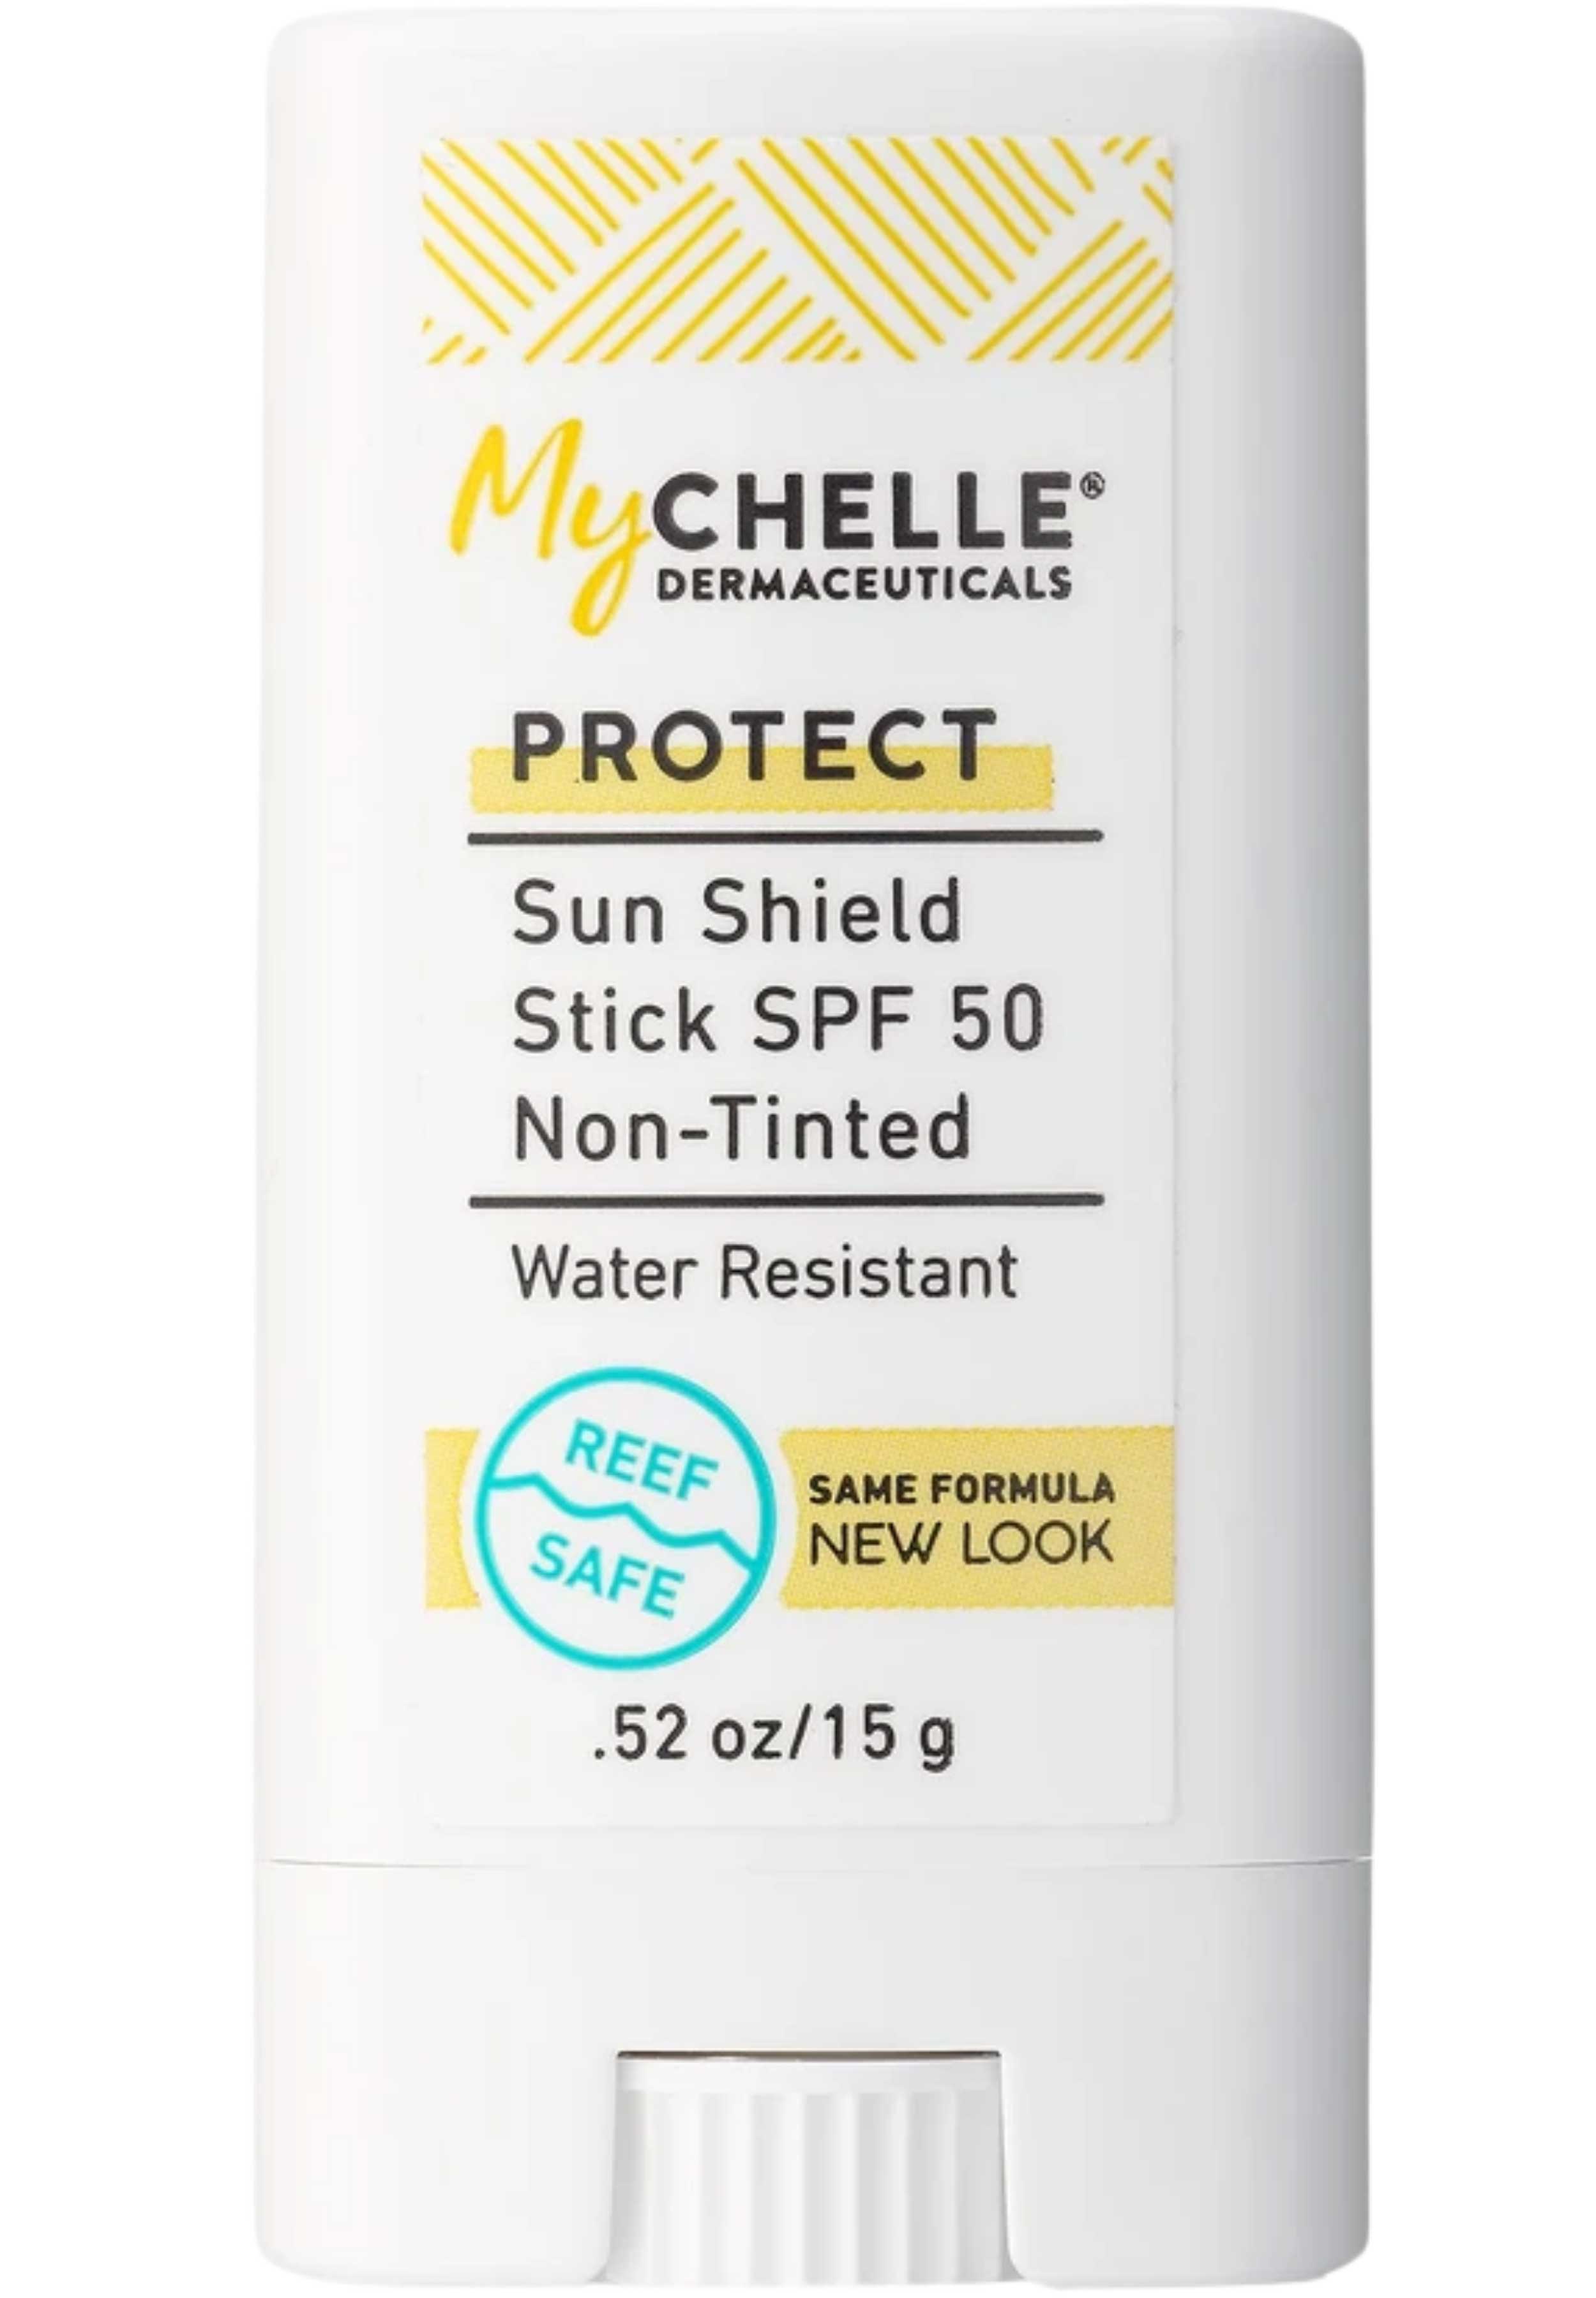 MyChelle Dermaceuticals Sun Shield Stick SPF 50